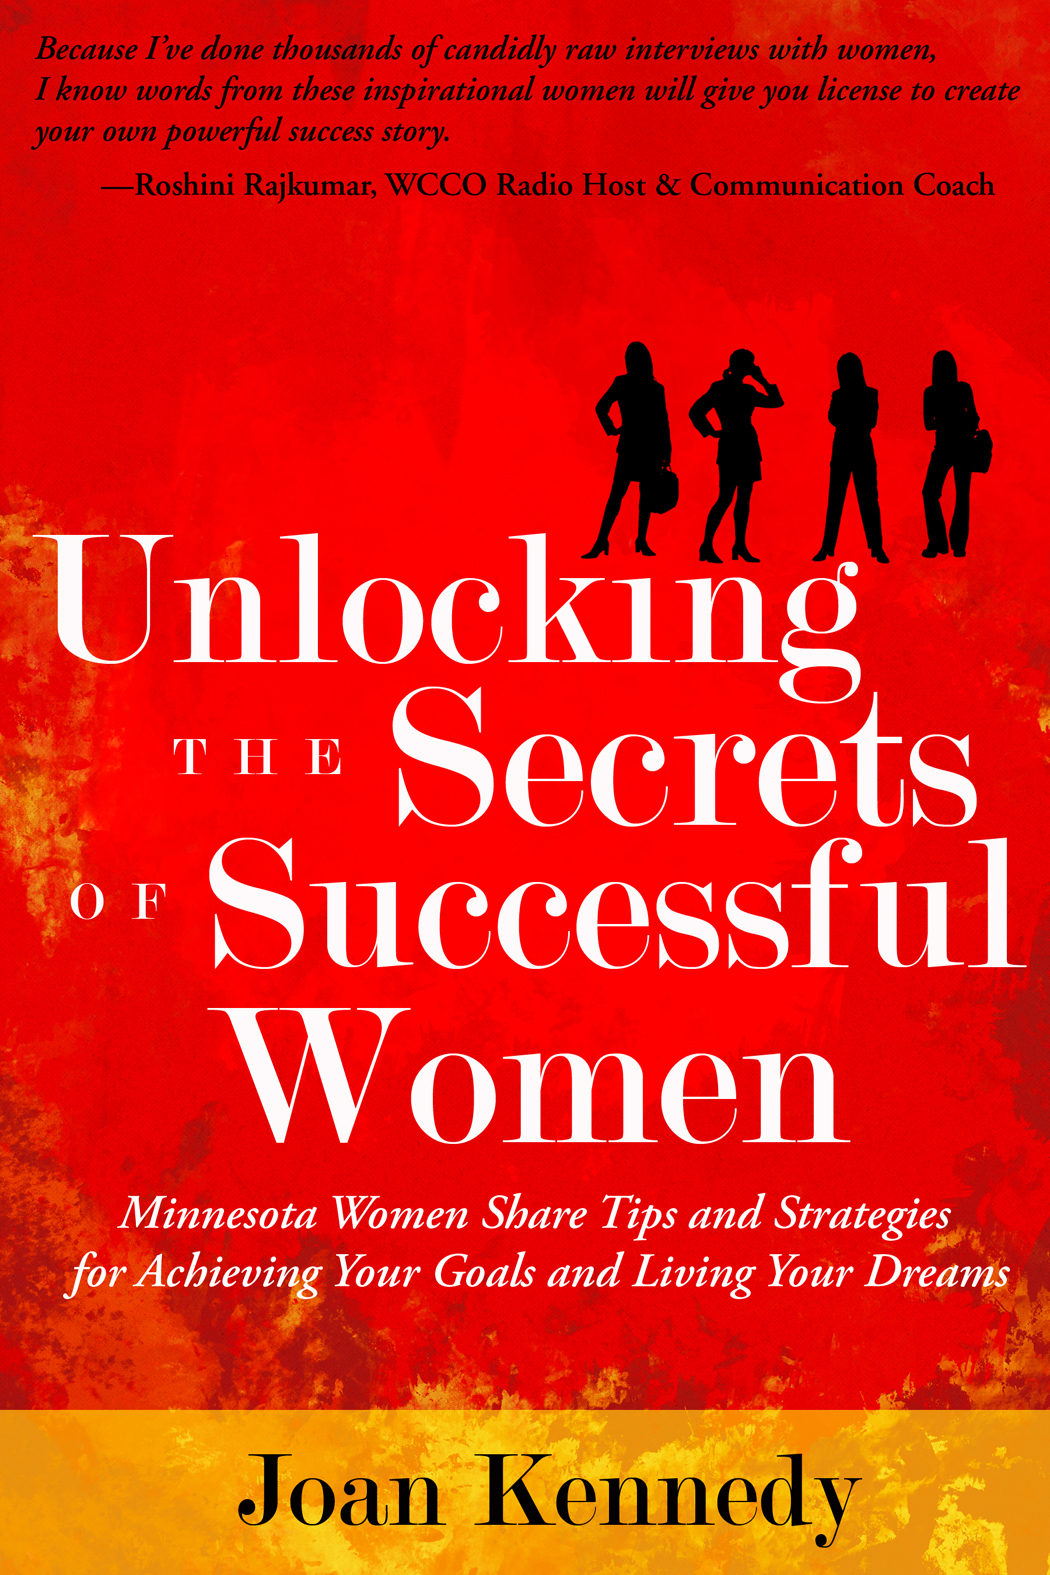 book successful women